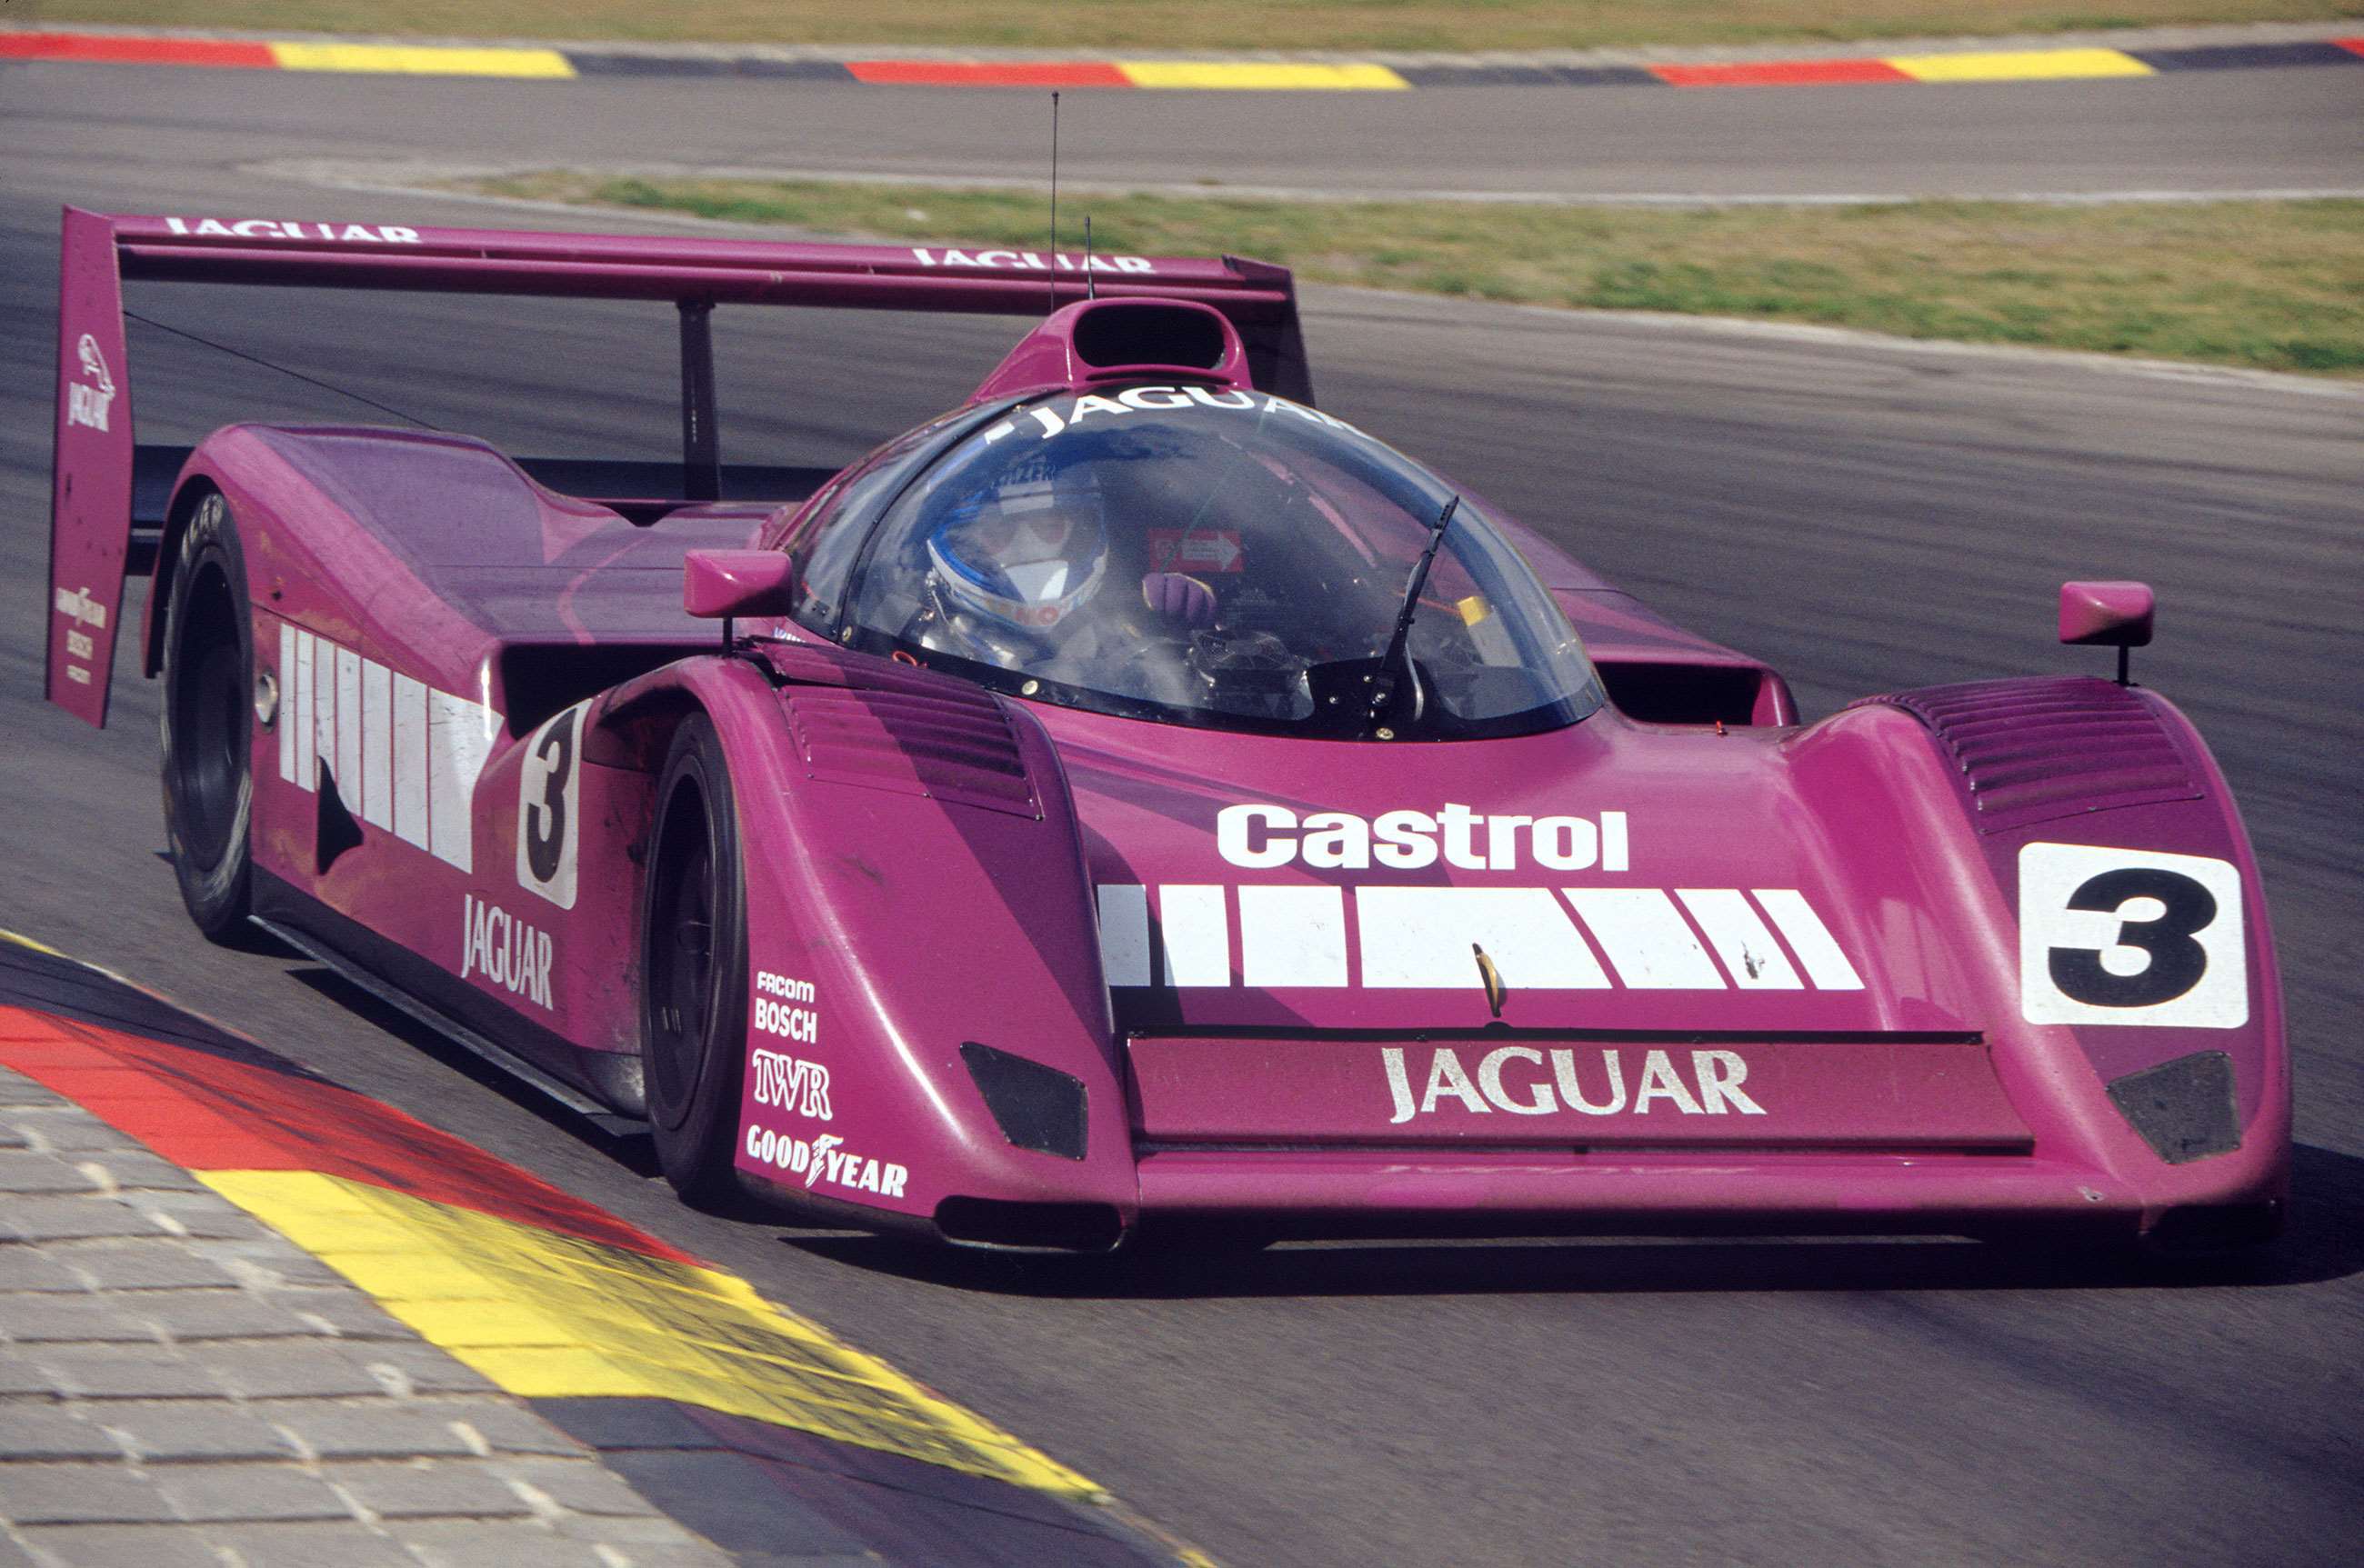 jaguar-xjr-14-nurburgring-1991-derek-warwick-david-brabham-lat-motorsport-images-goodwood-02042020.jpg